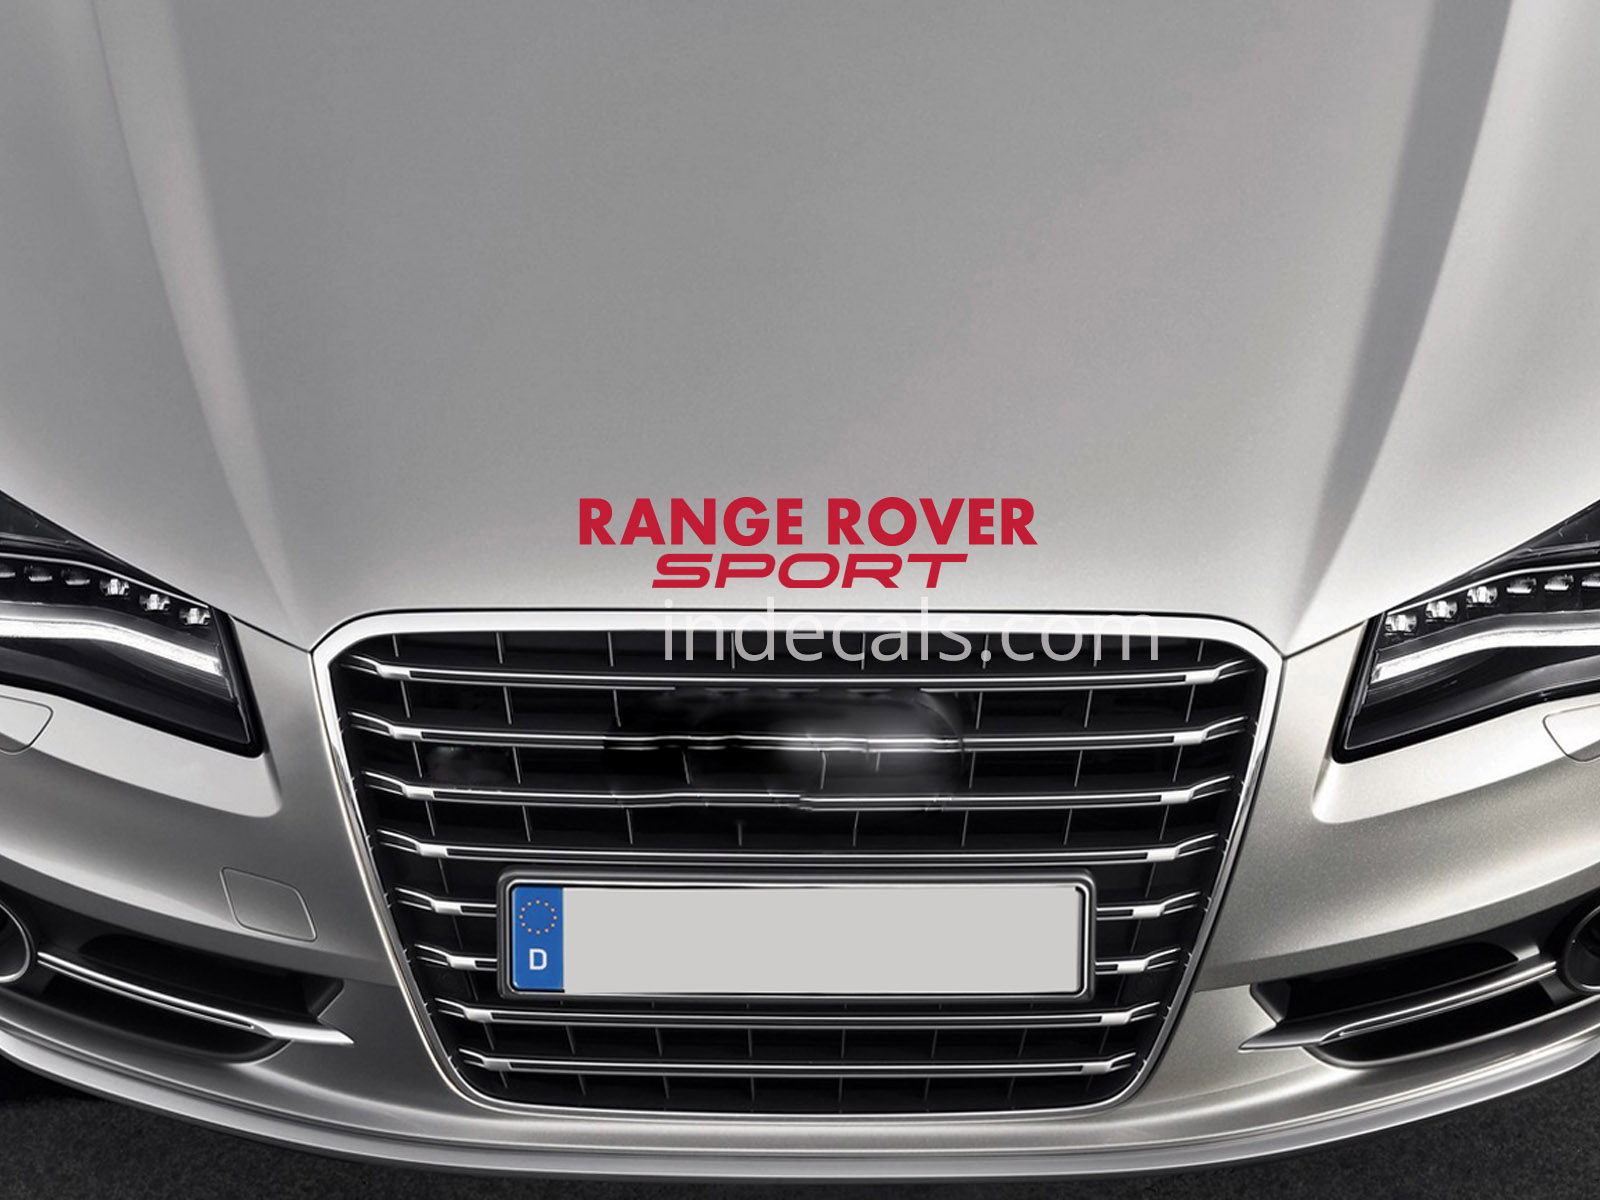 1 x Range Rover Sport Sticker for Bonnet - Red